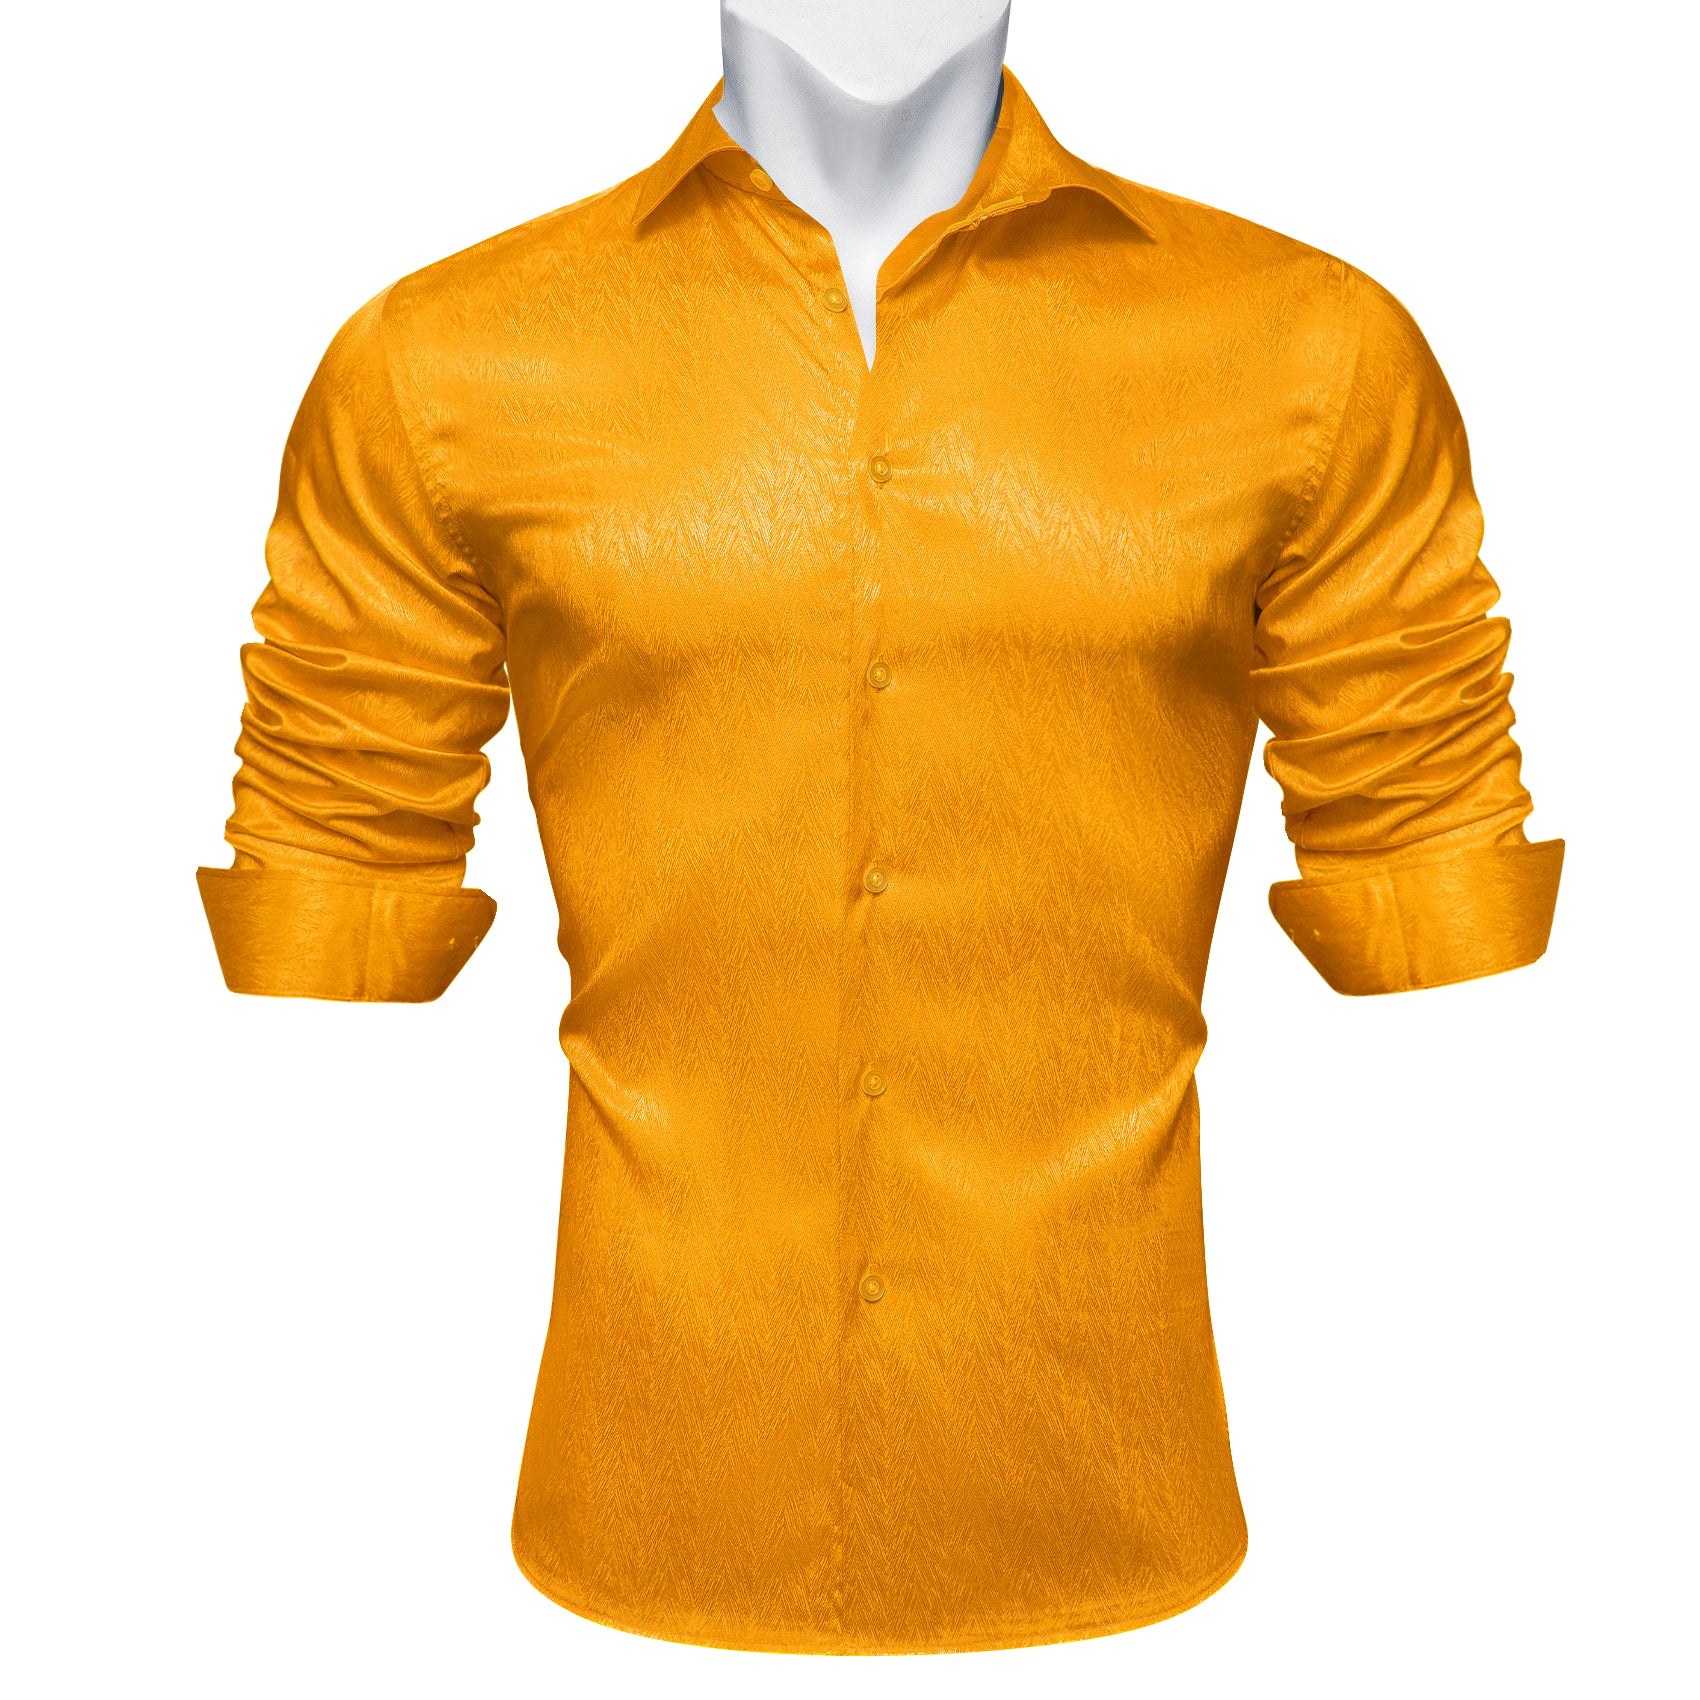 Barry.wang Men's Shirt Fashion Solid Silk Gold Yellow Button Up Shirt